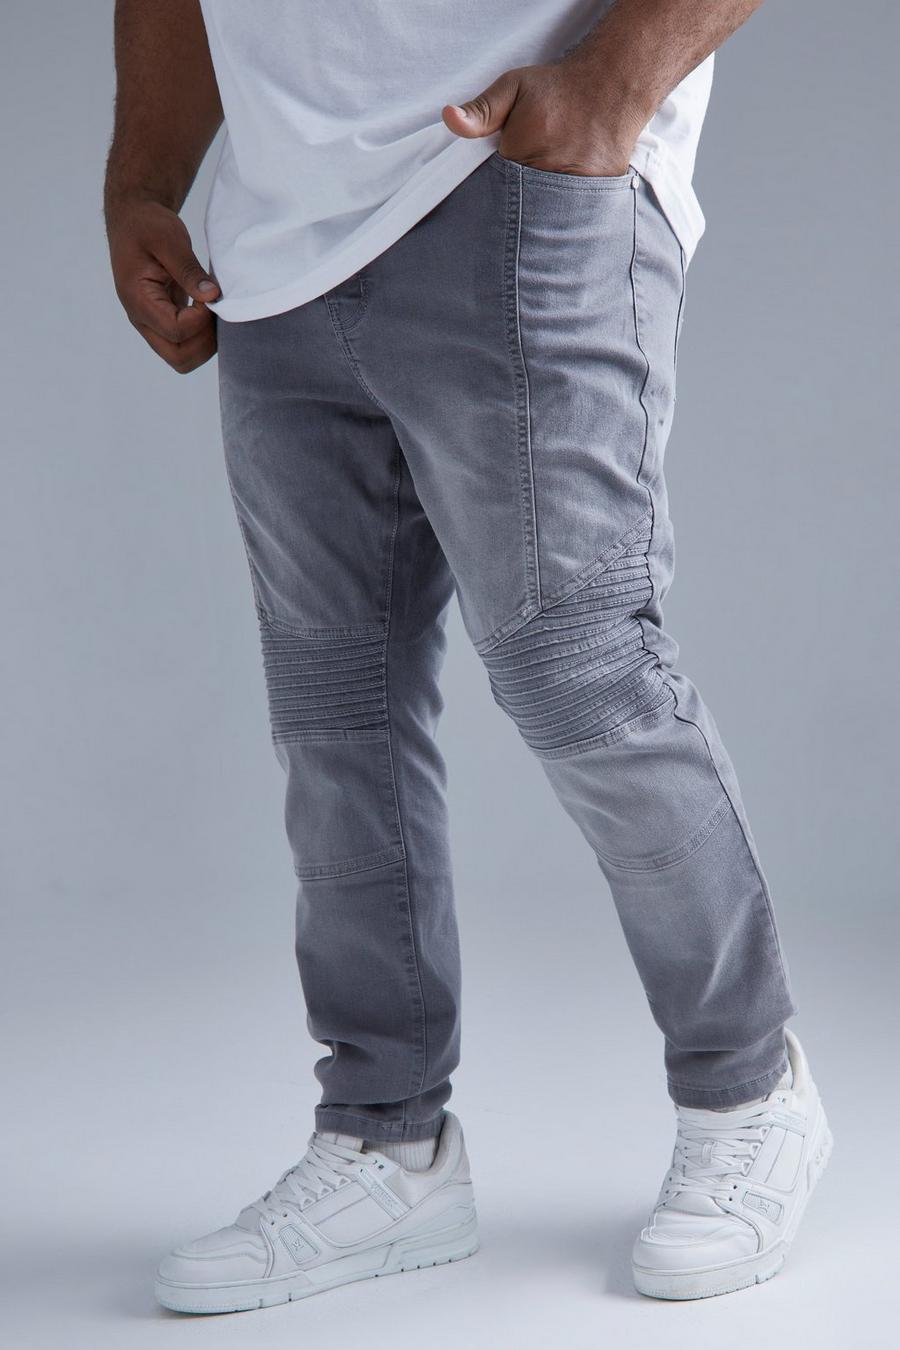 אפור ביניים ג'ינס סקיני נמתח בסגנון אופנוענים, מידות גדולות